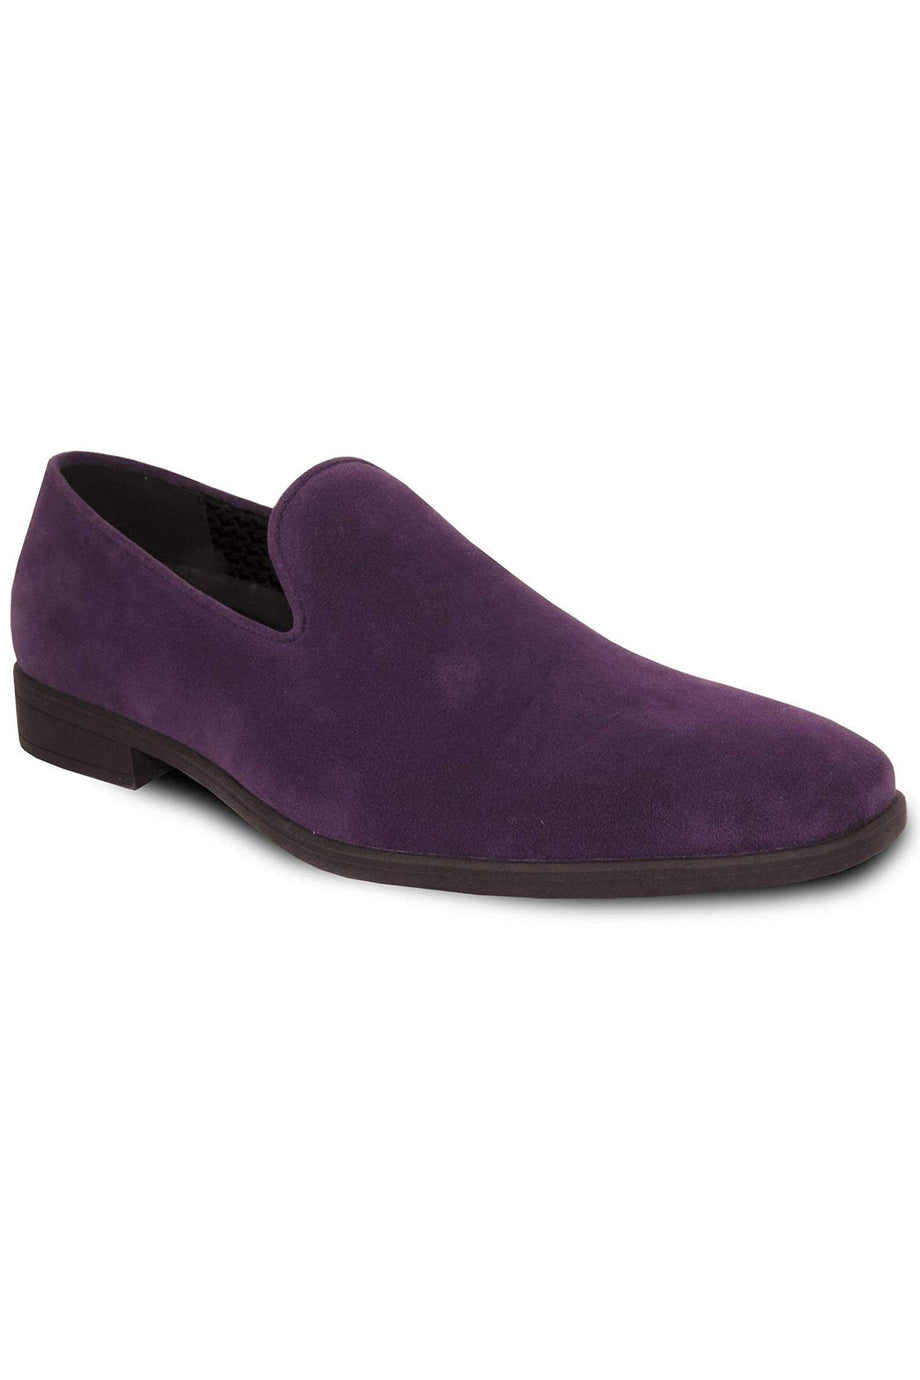 Vangelo "Chelsea" Purple Suede Tuxedo Shoes